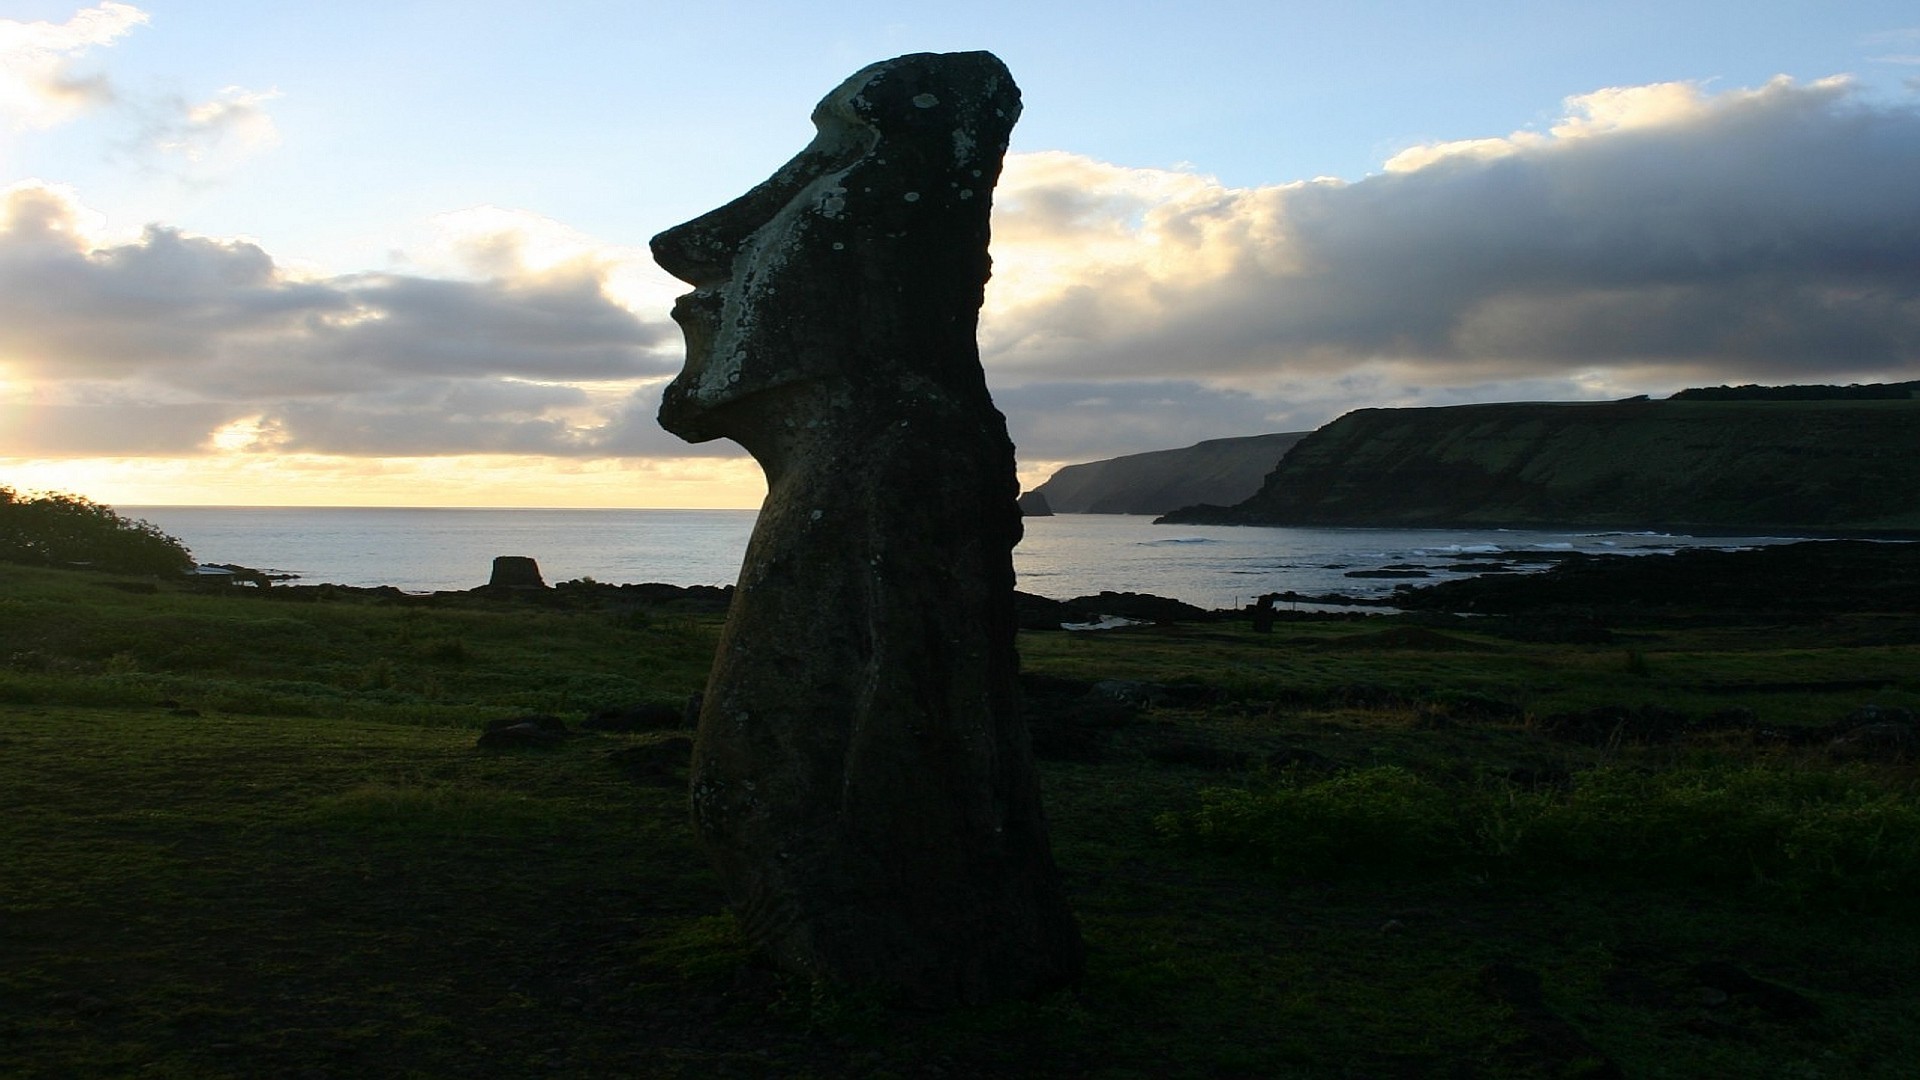 Moai statues on Easter Island wallpaper   104885